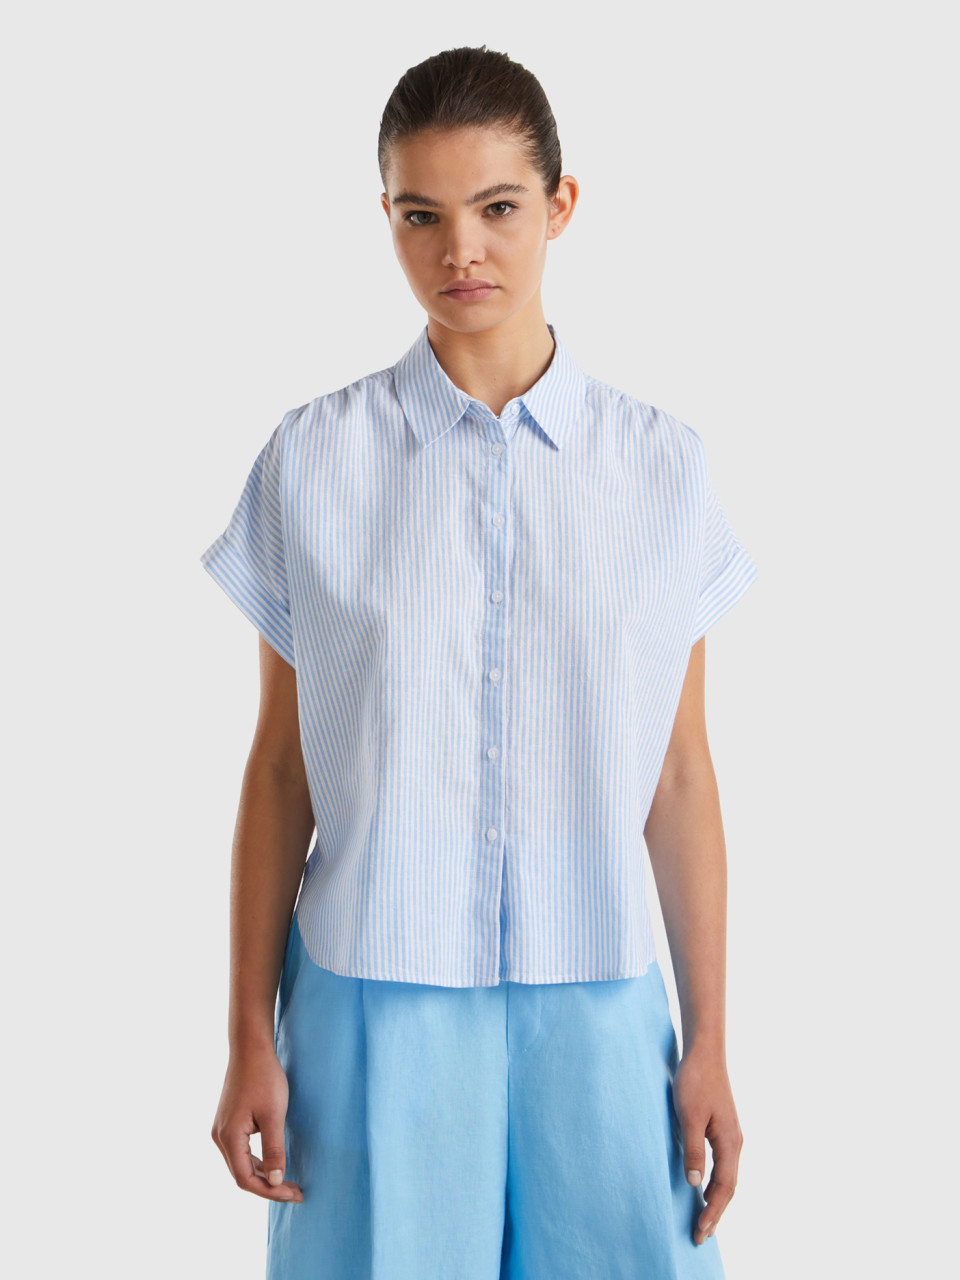 Benetton, Comfort Fit Striped Shirt, Light Blue, Women